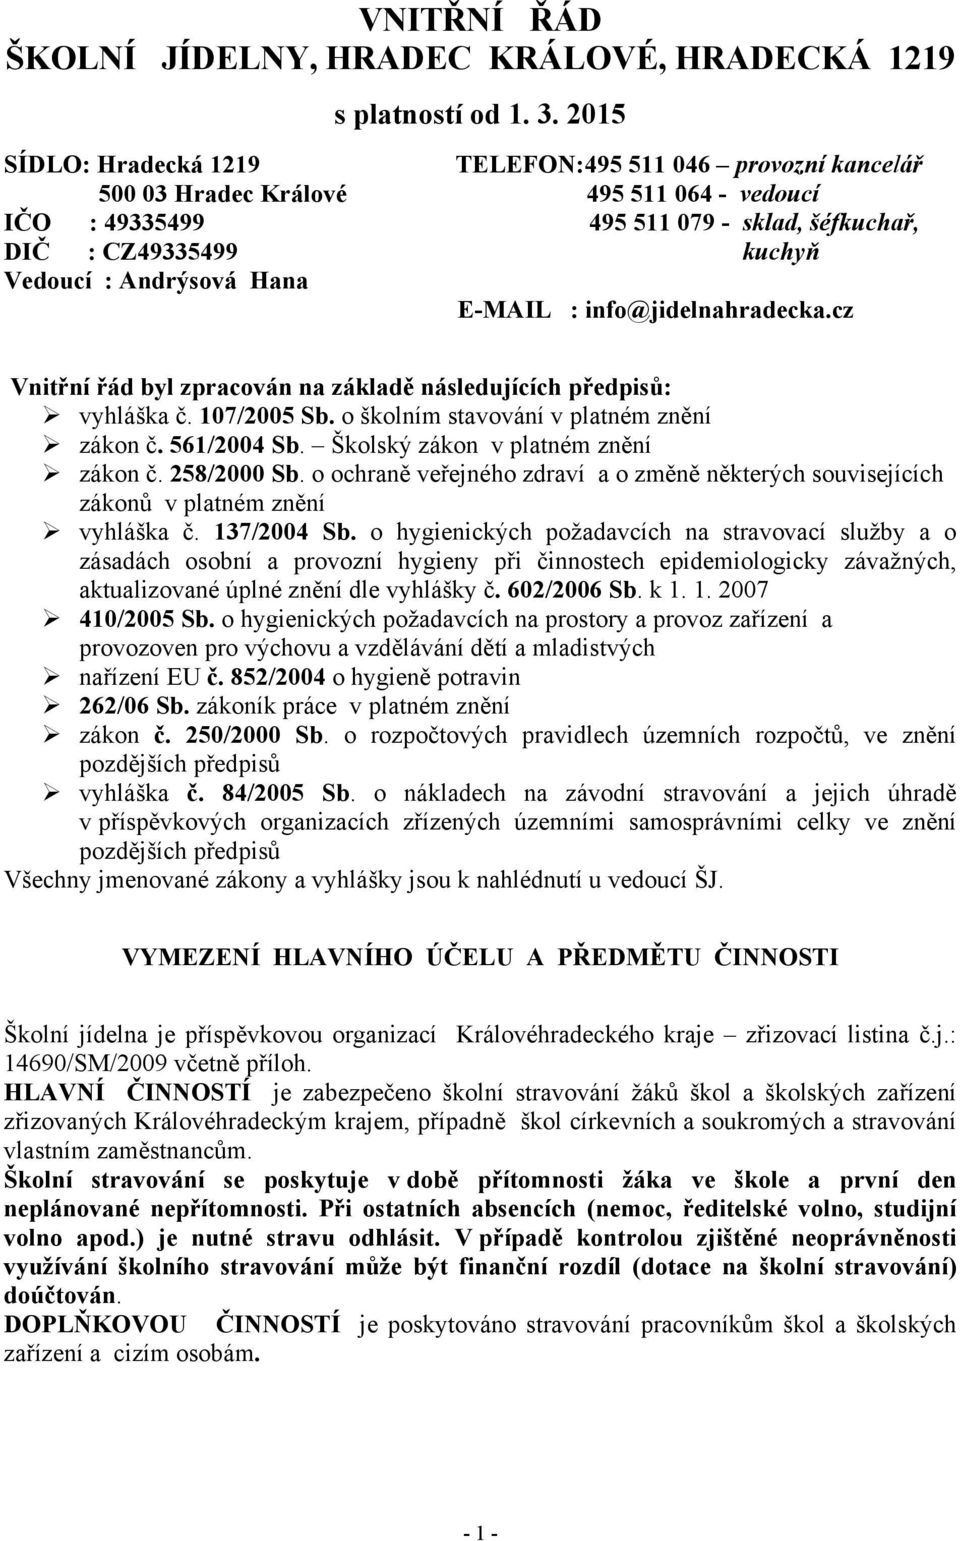 Hana E-MAIL : info@jidelnahradecka.cz Vnitřní řád byl zpracován na základě následujících předpisů: vyhláška č. 107/2005 Sb. o školním stavování v platném znění zákon č. 561/2004 Sb.